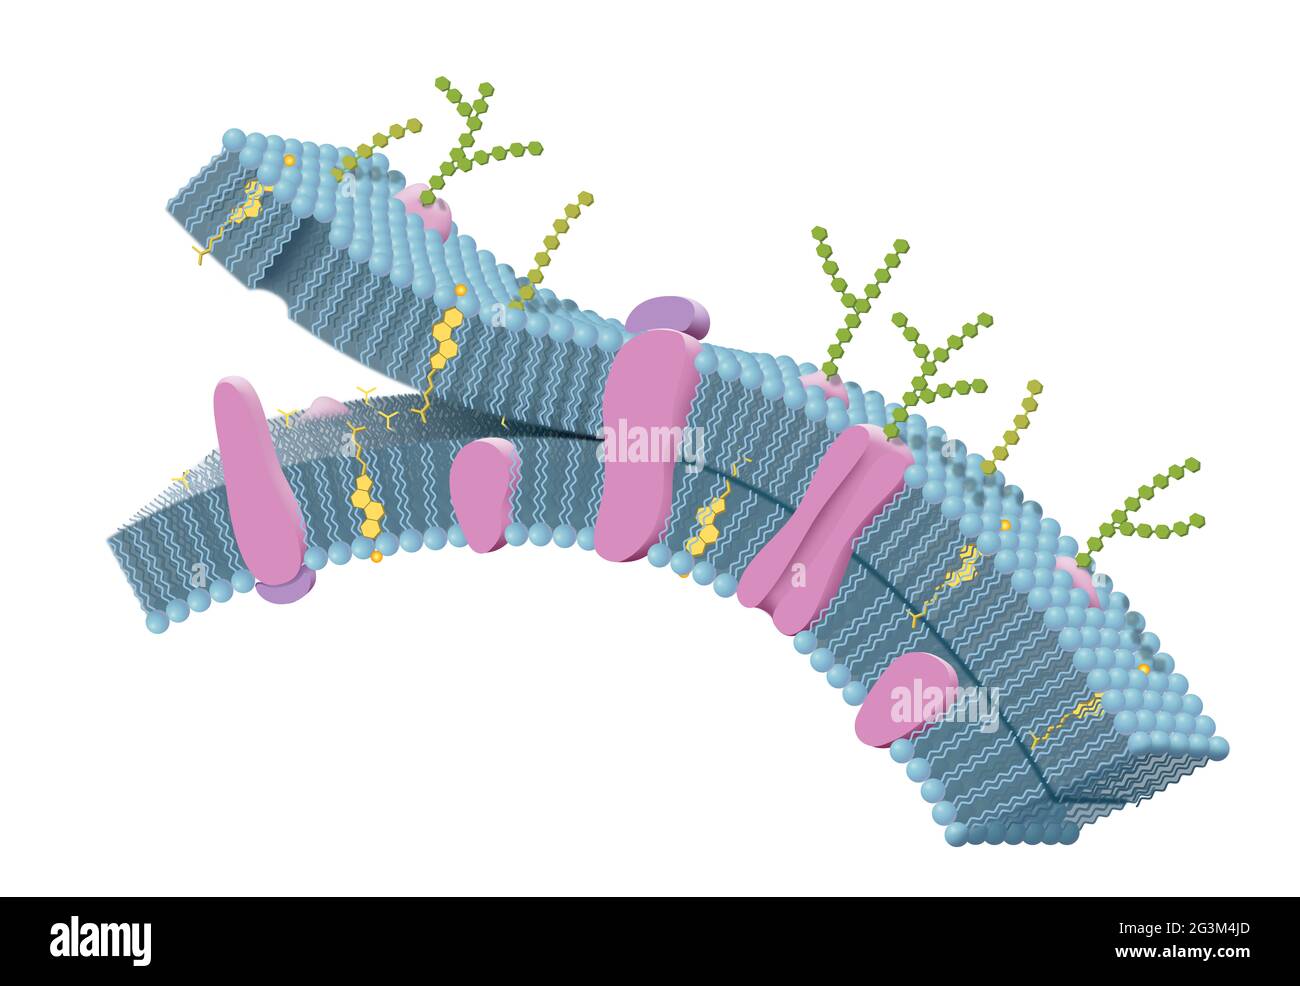 Zellmembran mit Phospholipiden, Cholesterin, intrinsischen und extrinsischen Proteinen. 3D-Illustration Stockfoto